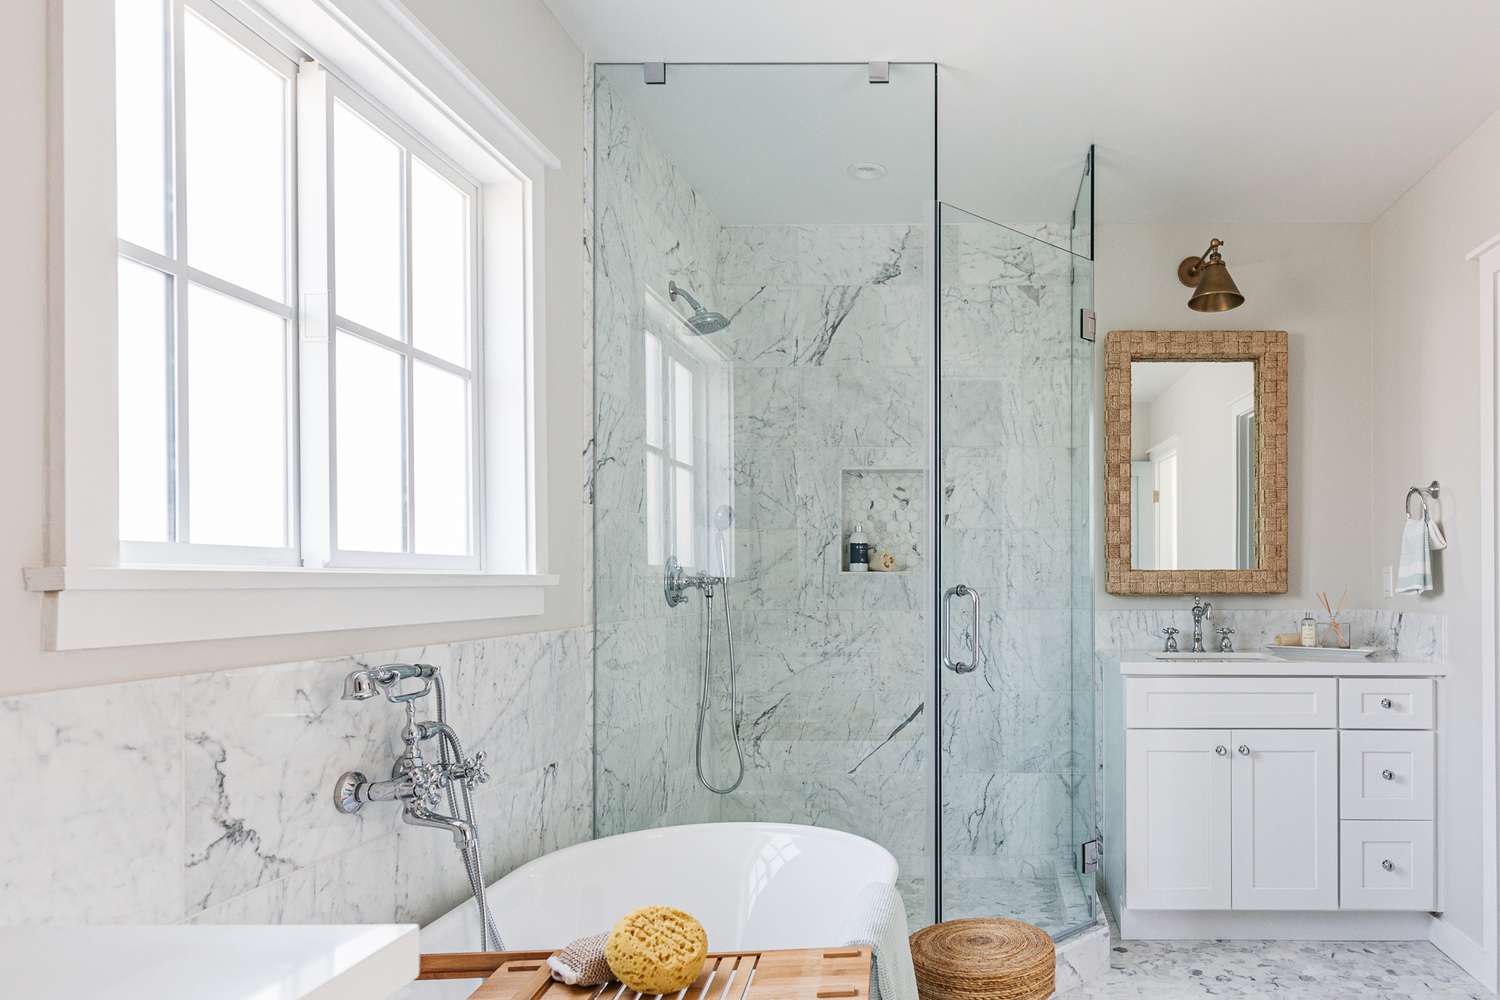 Puerta de ducha de cristal en baño blanco jaspeado con bañera blanca y ventanal